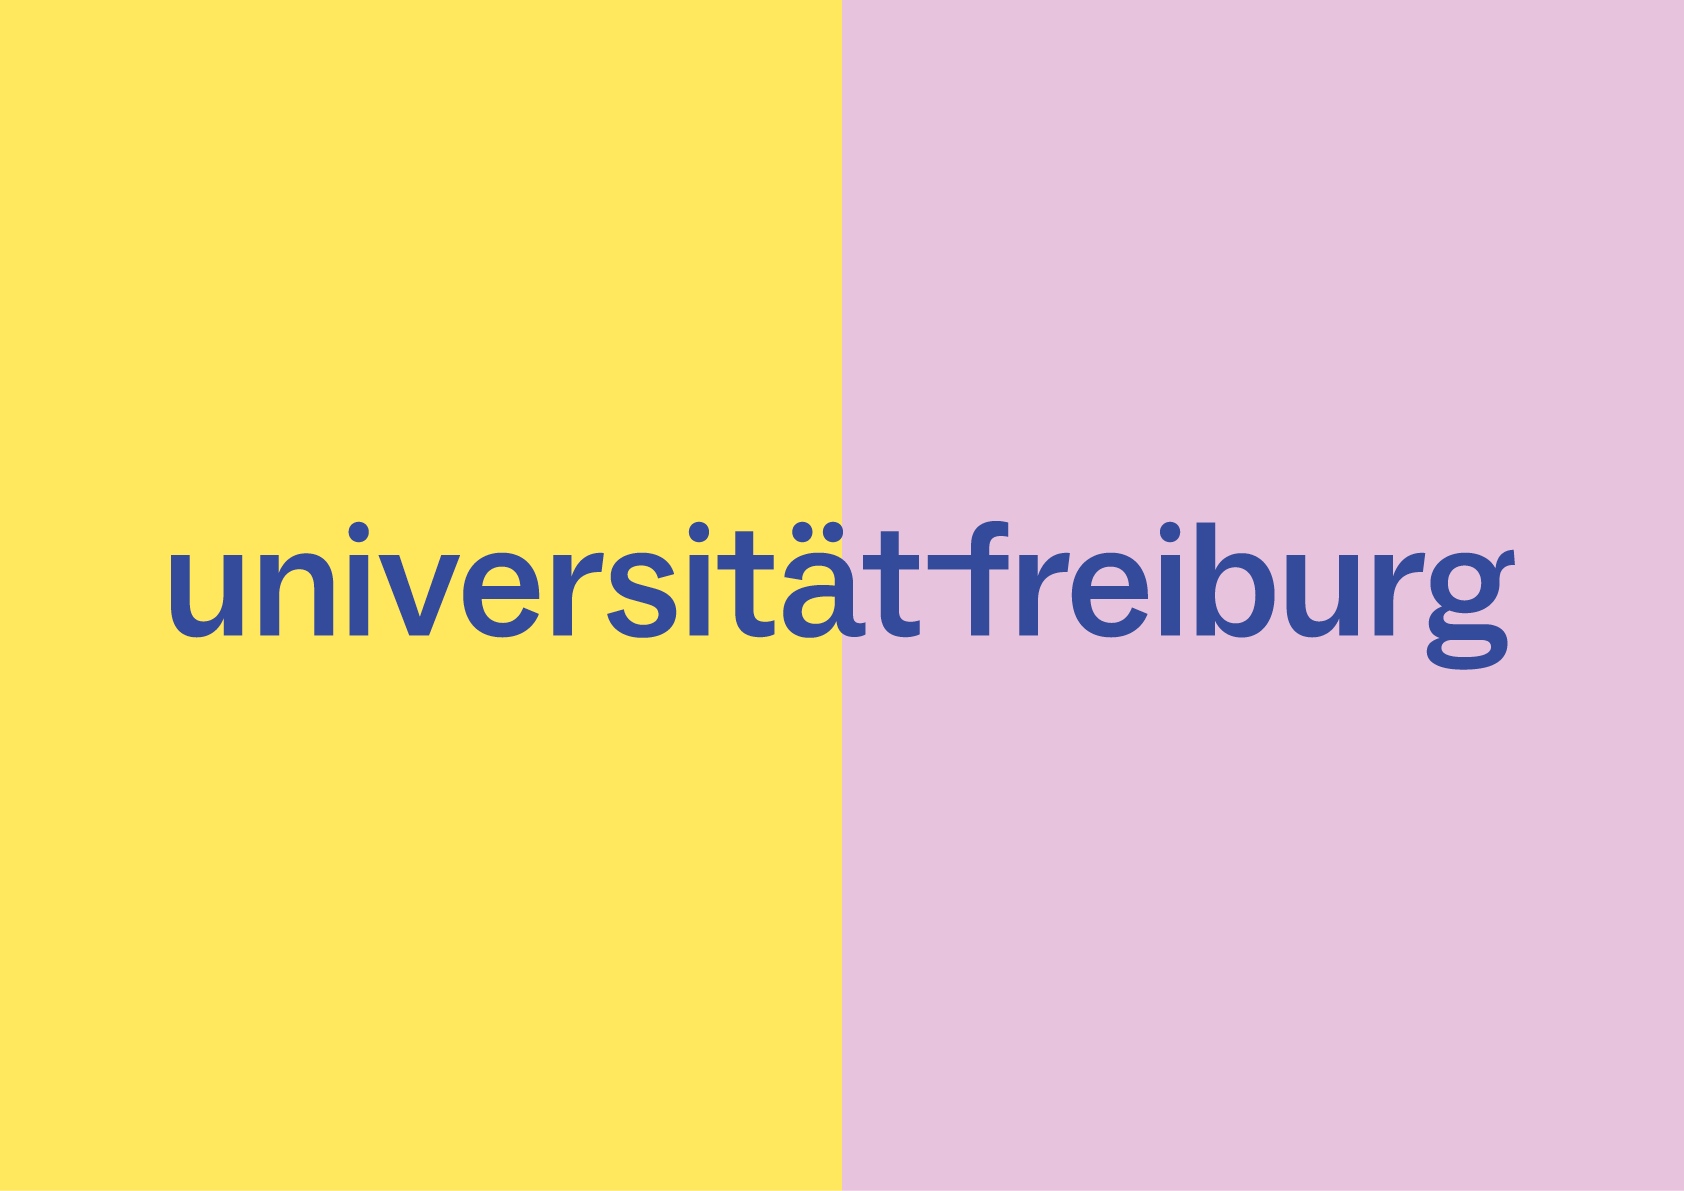 Blaue Wortmarke der Universität auf hellen Zusatzfarben (gelb und rosa)